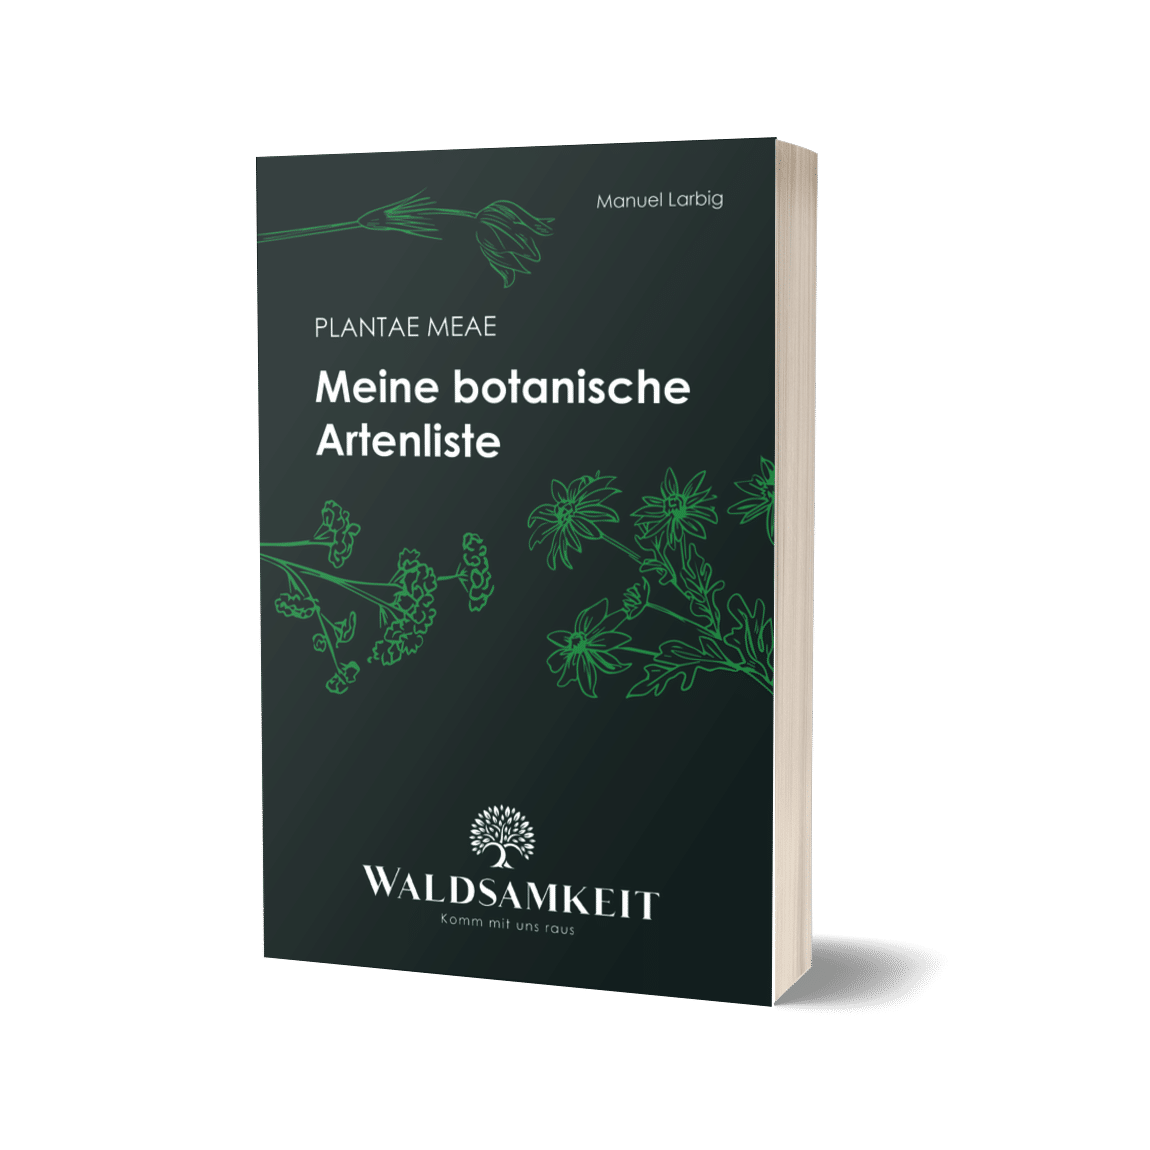 Plantae meae - meine botanische Artenliste